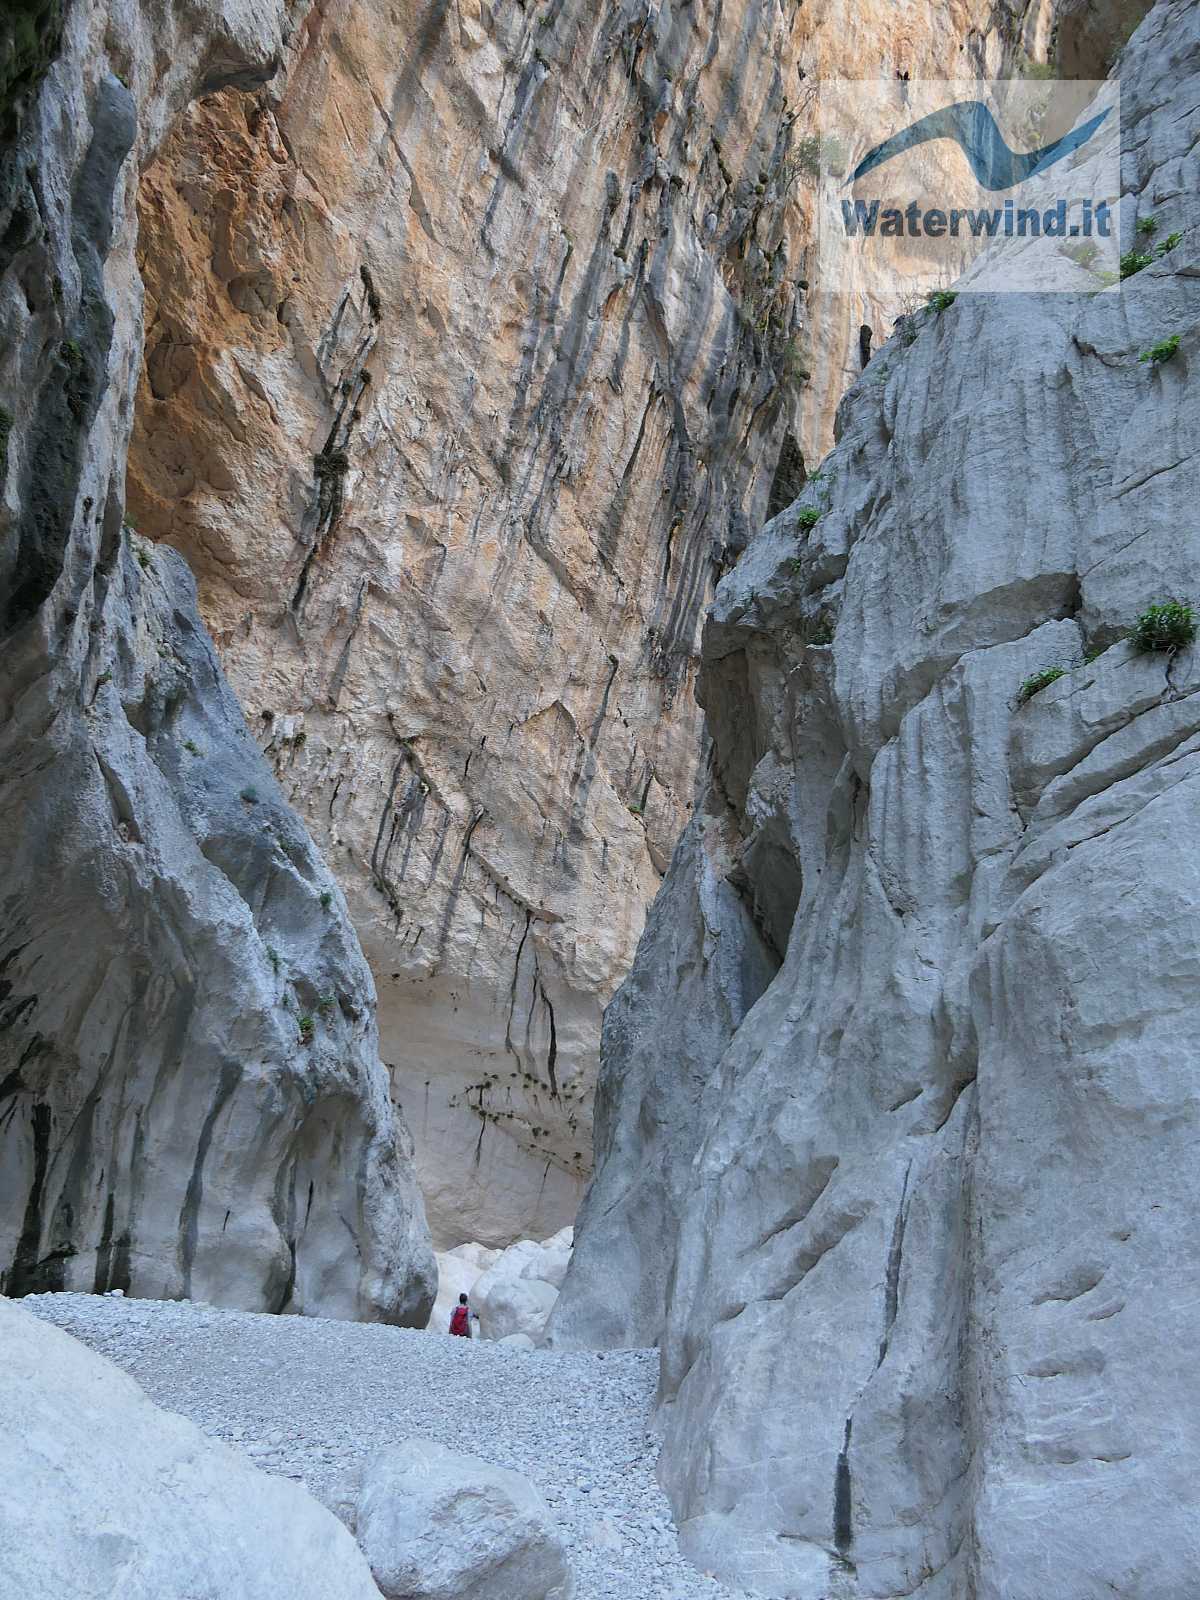 Gorges of Gorropu, Sardinia